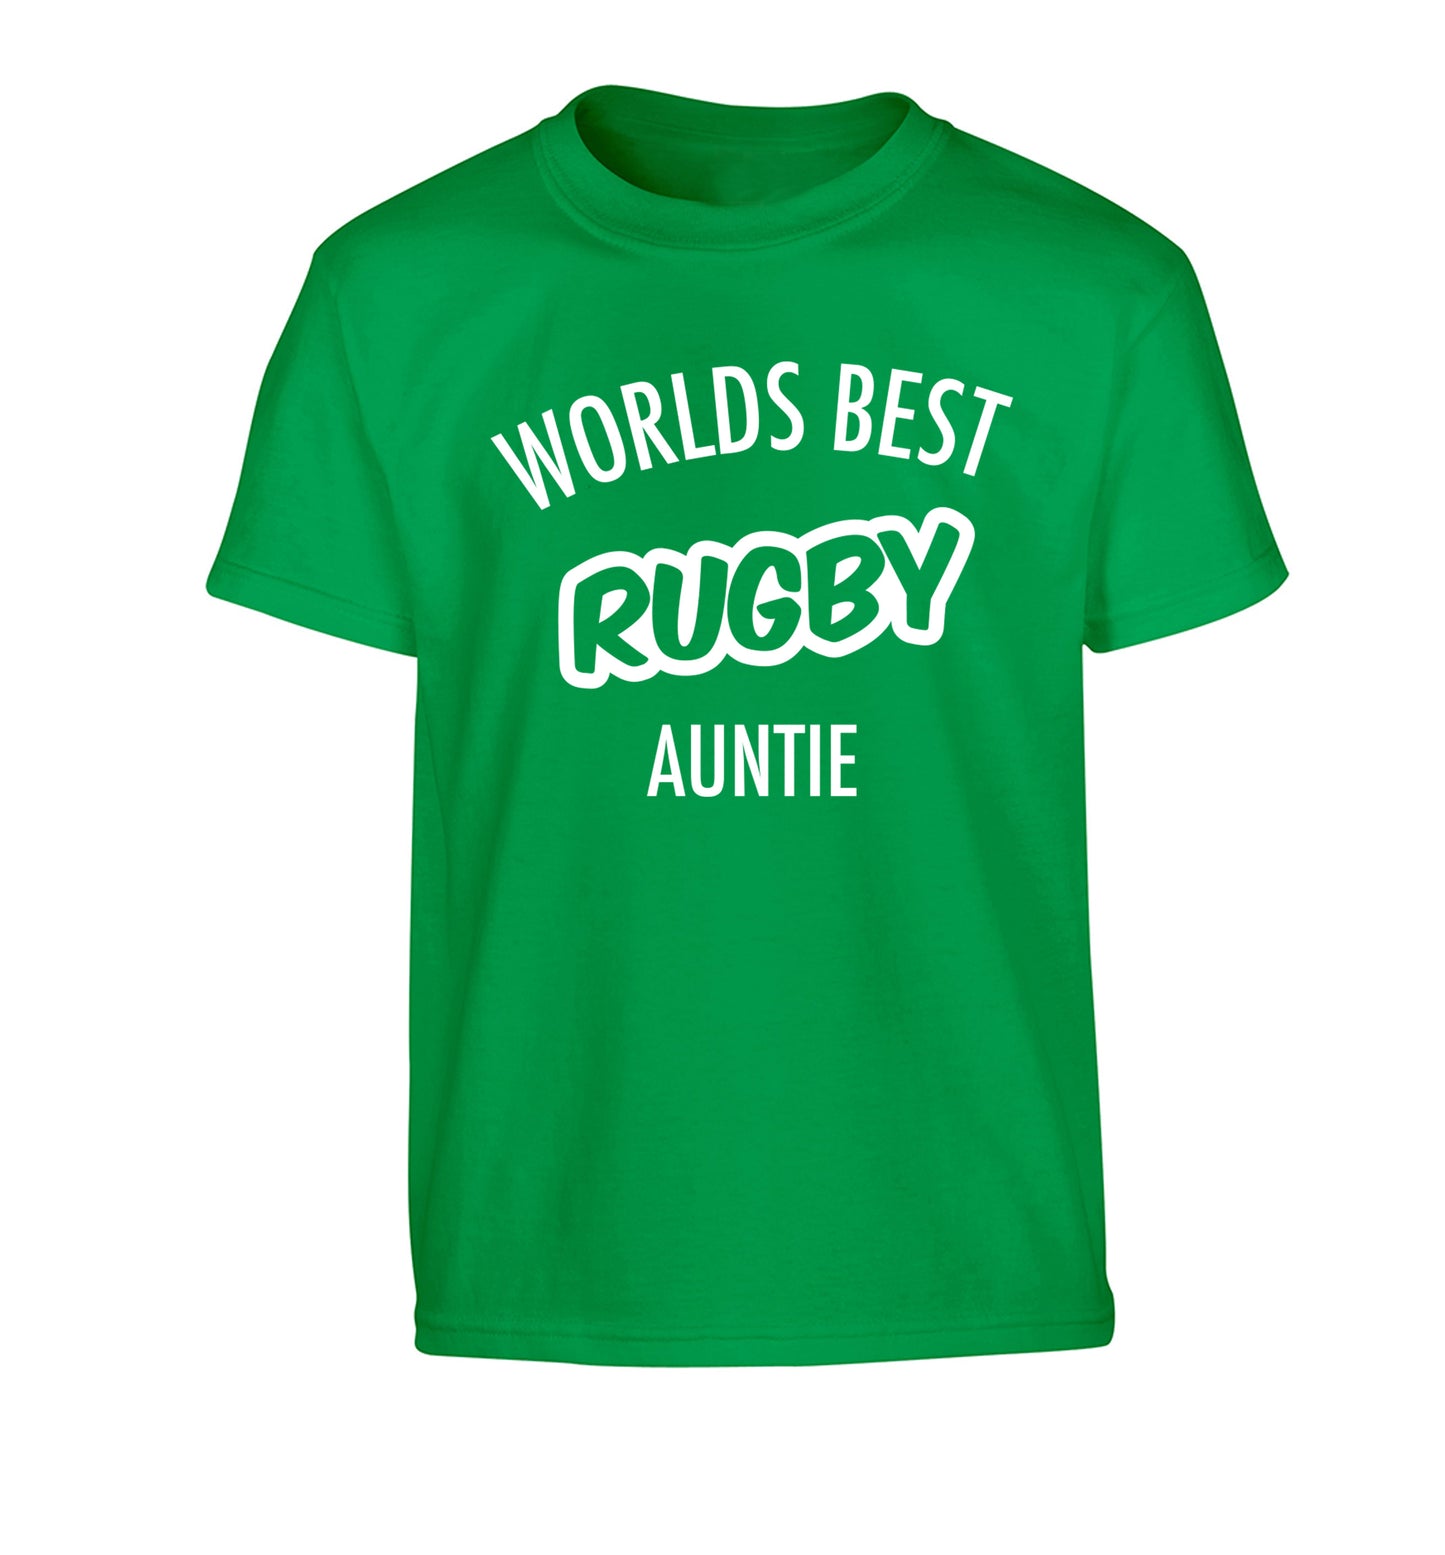 Worlds best rugby auntie Children's green Tshirt 12-13 Years